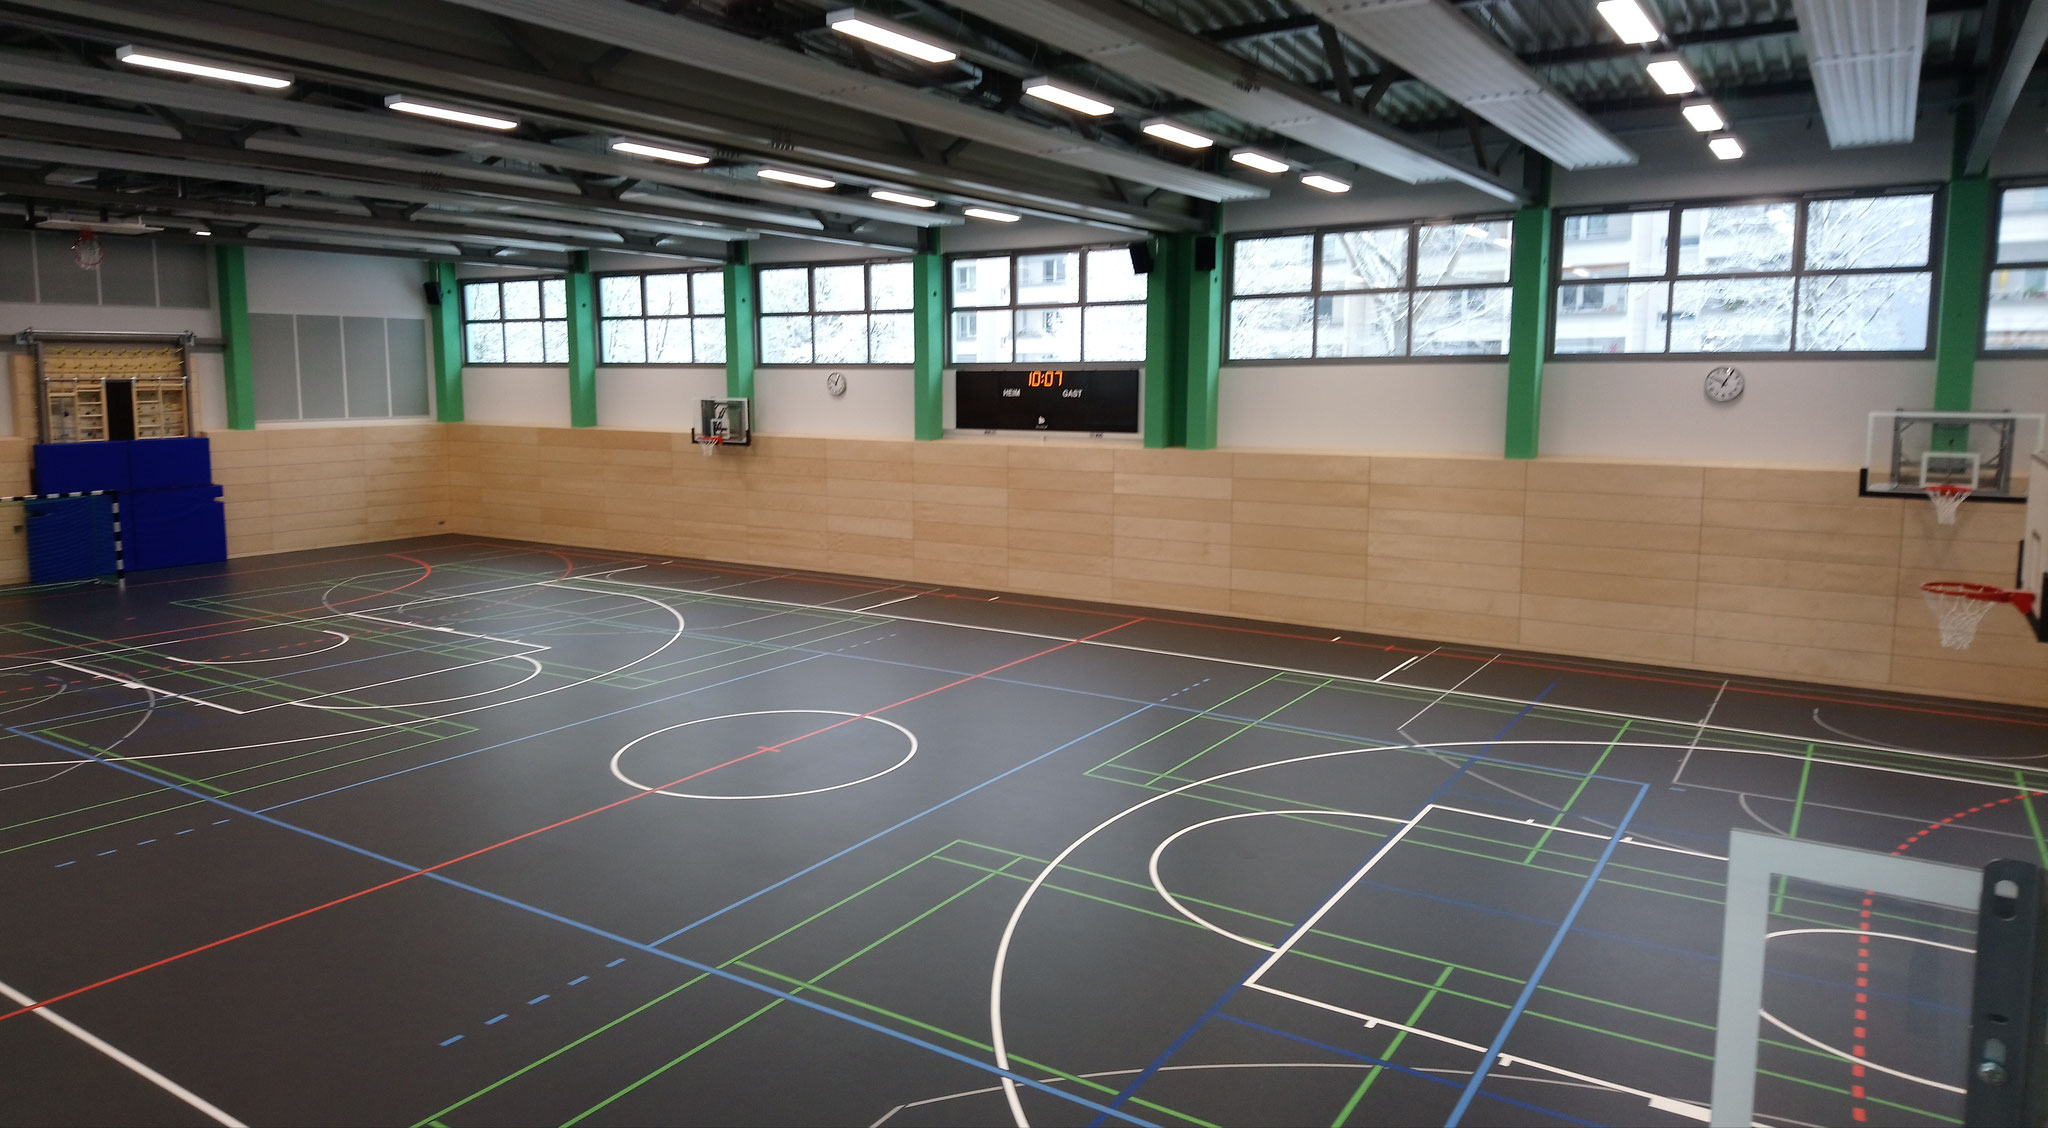 21. Dezember: Nach knapp zweieinhalb Jahren Bauzeit kann die neue Sporthalle der Grundschule an der Wuhle im Teterower Ring endlich in Betrieb gehen. Knapp fünf Millionen Euro hat der Neubau gekostet. 